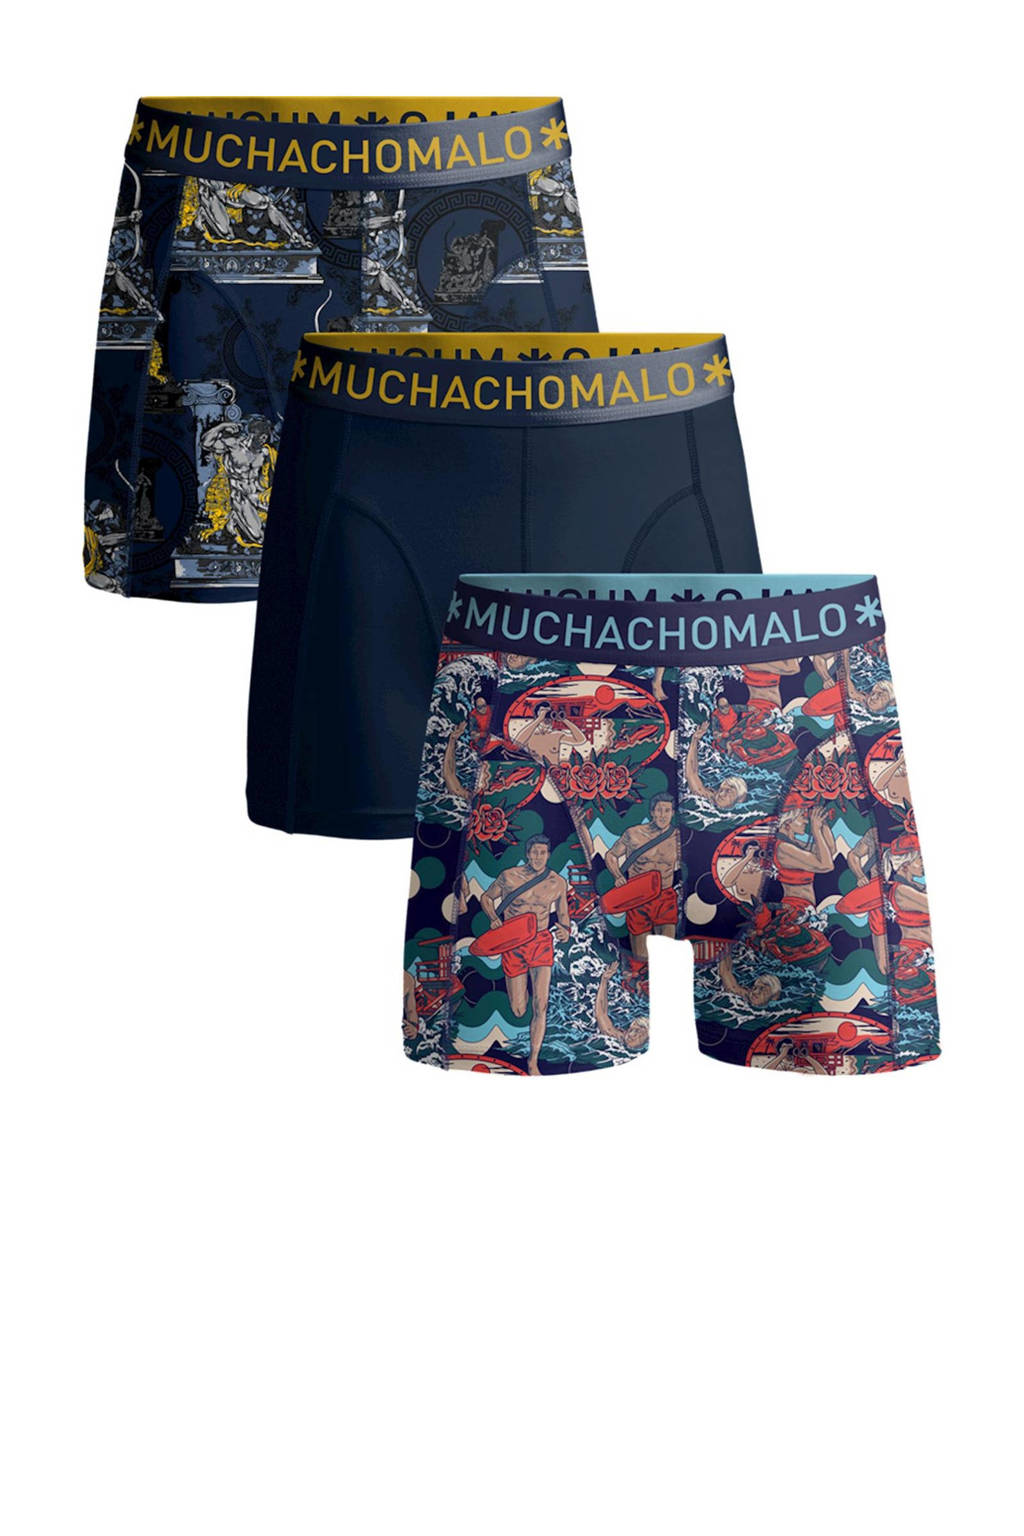 Muchachomalo   boxershort Hercules Baywatch- set van 3 blauw